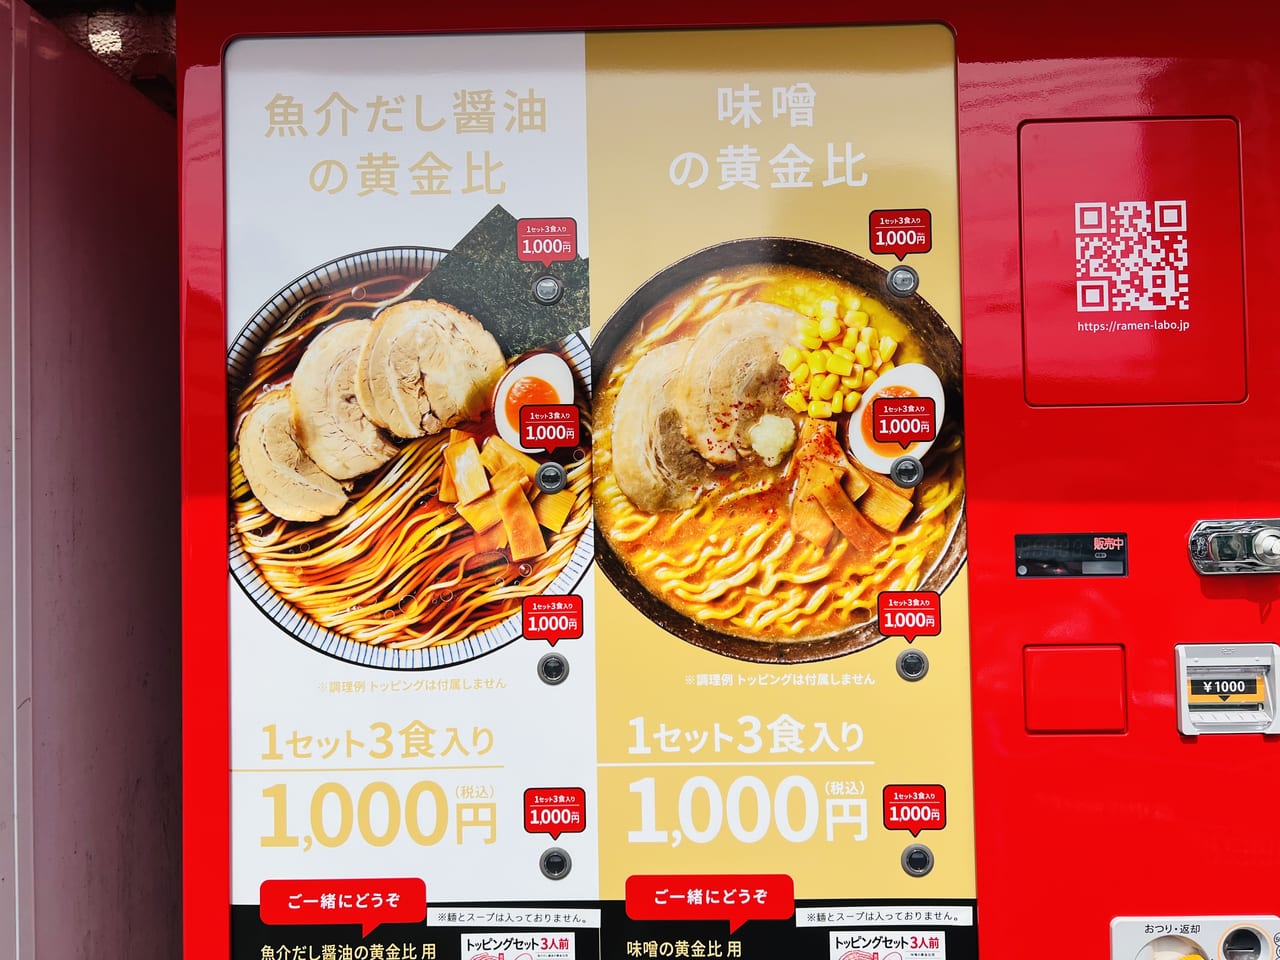 「日本ラーメン科学研究所 イオン高知旭町店」の自動販売機のメニュー